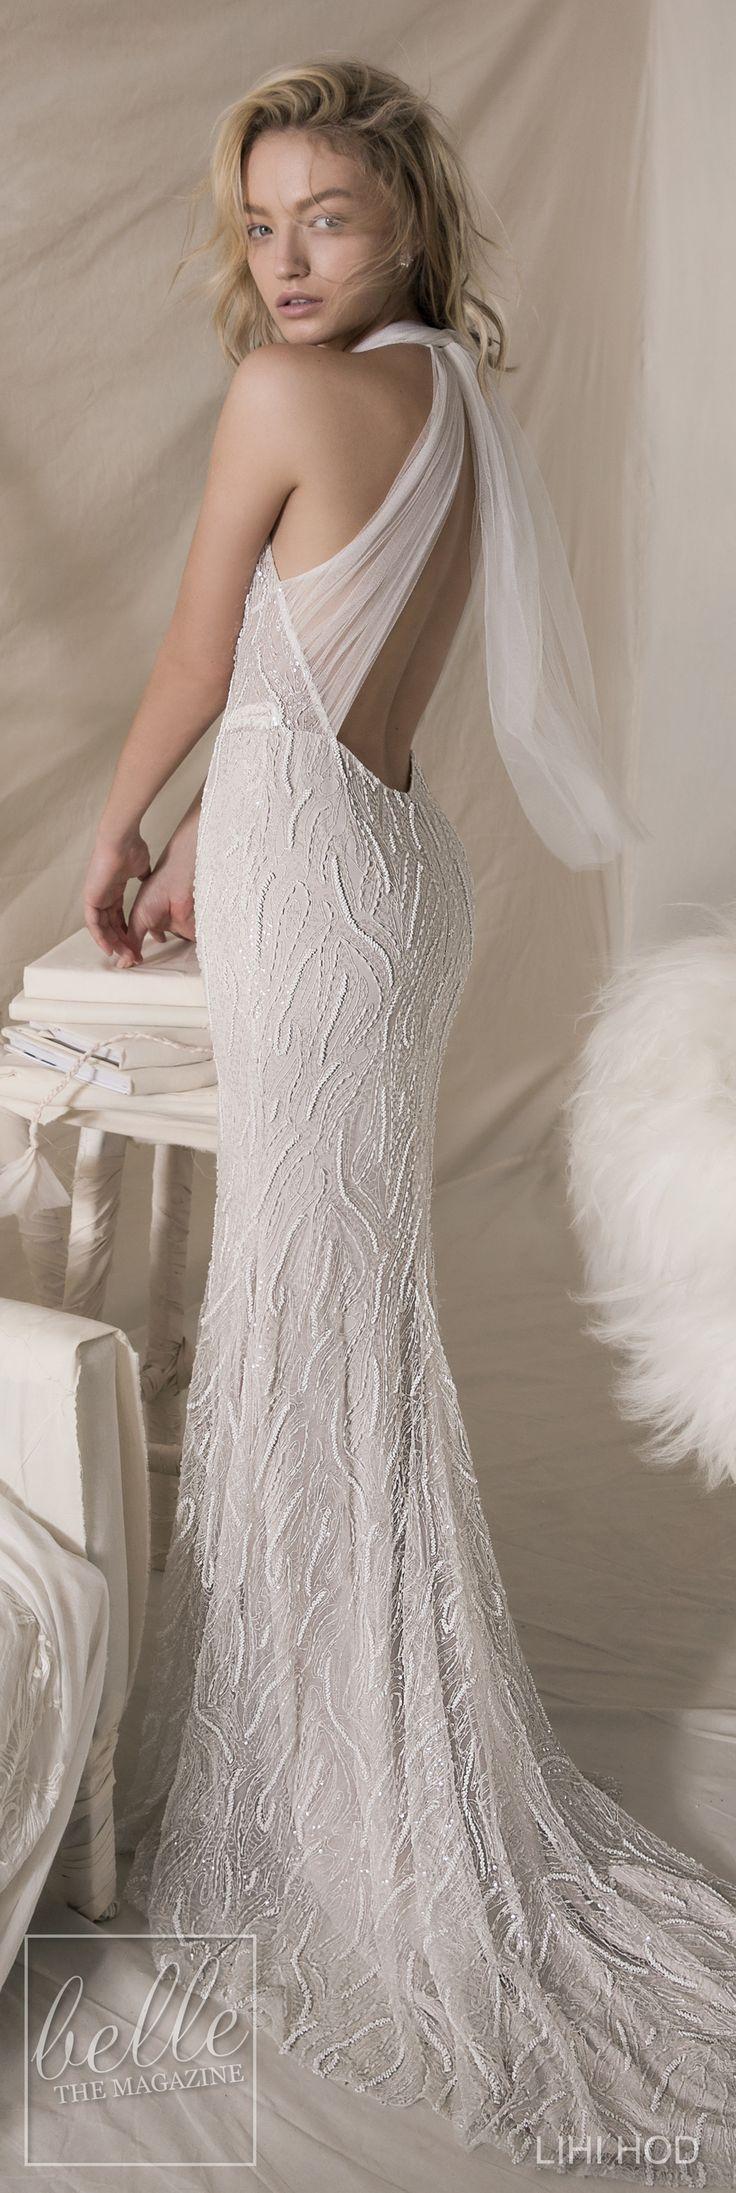 زفاف - Wedding Dresses By Lihi Hod Fall 2018 Couture Bridal Collection